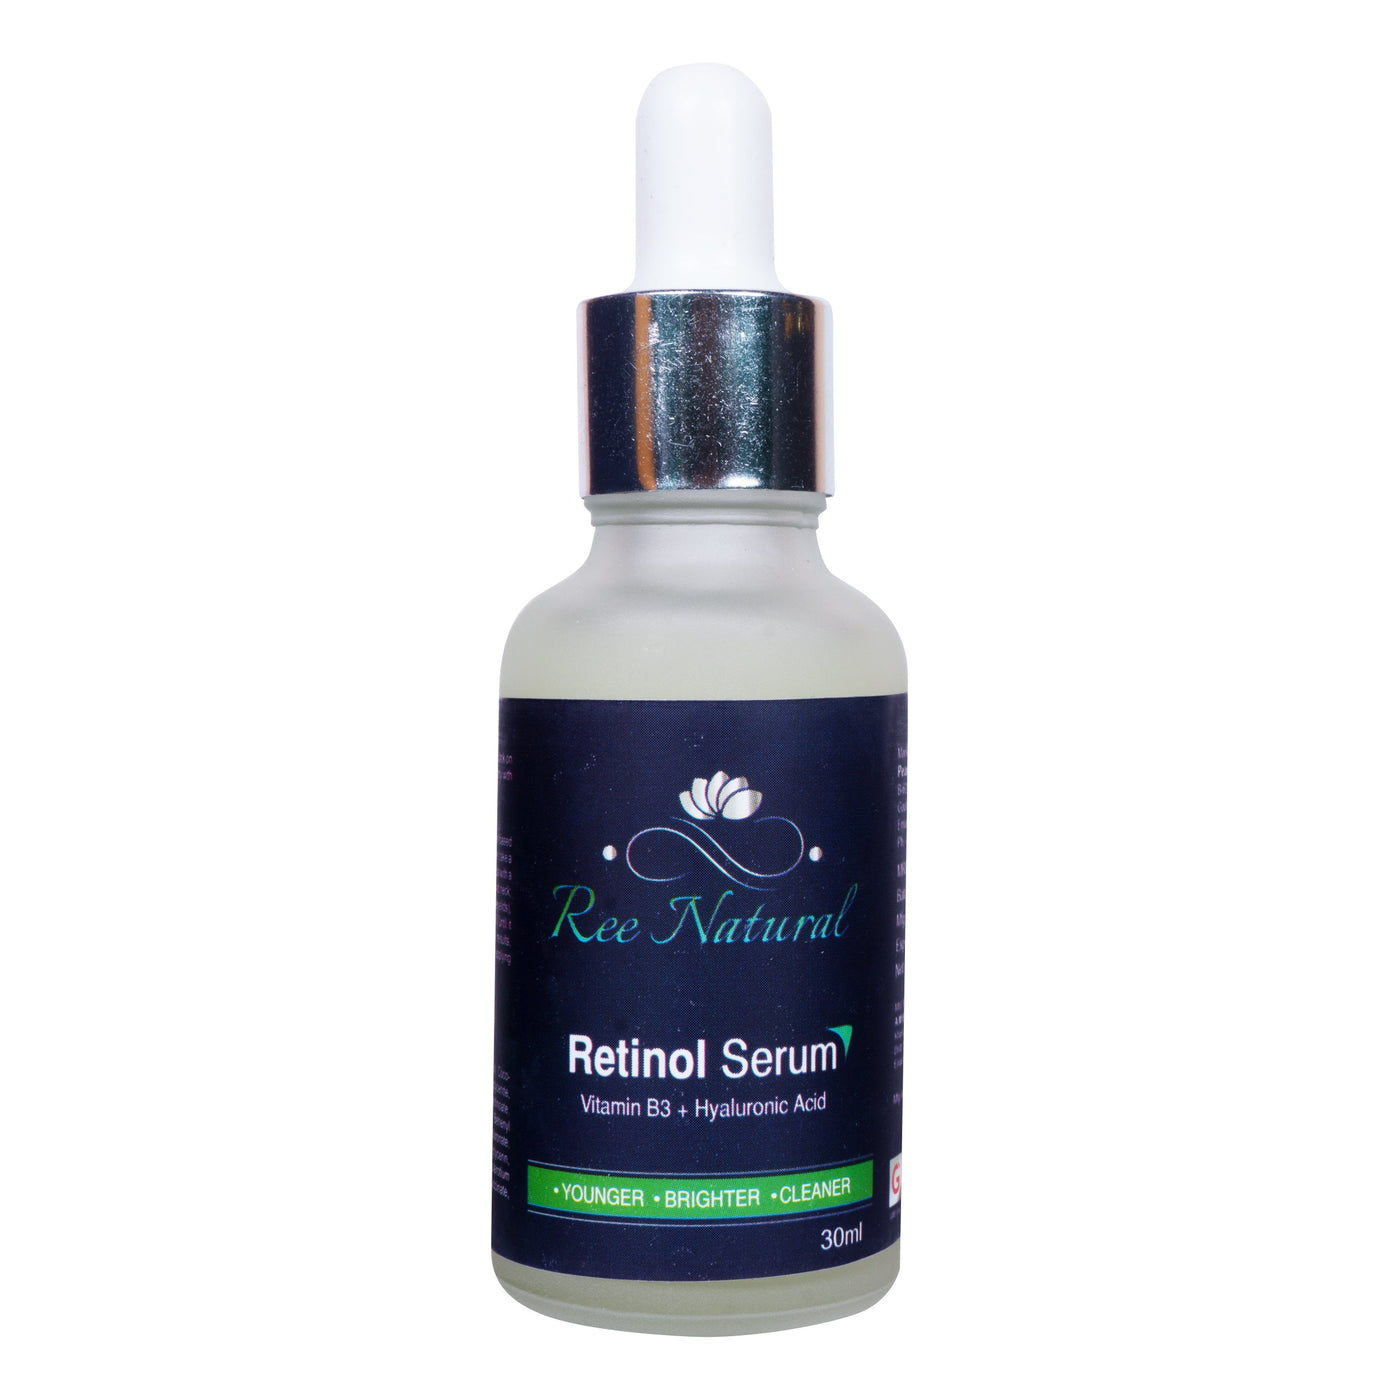 Women's Retinol Serum With Retinol And Vitamin E And B3 And Hyaluronic Acid (30Ml) - Ree Natural